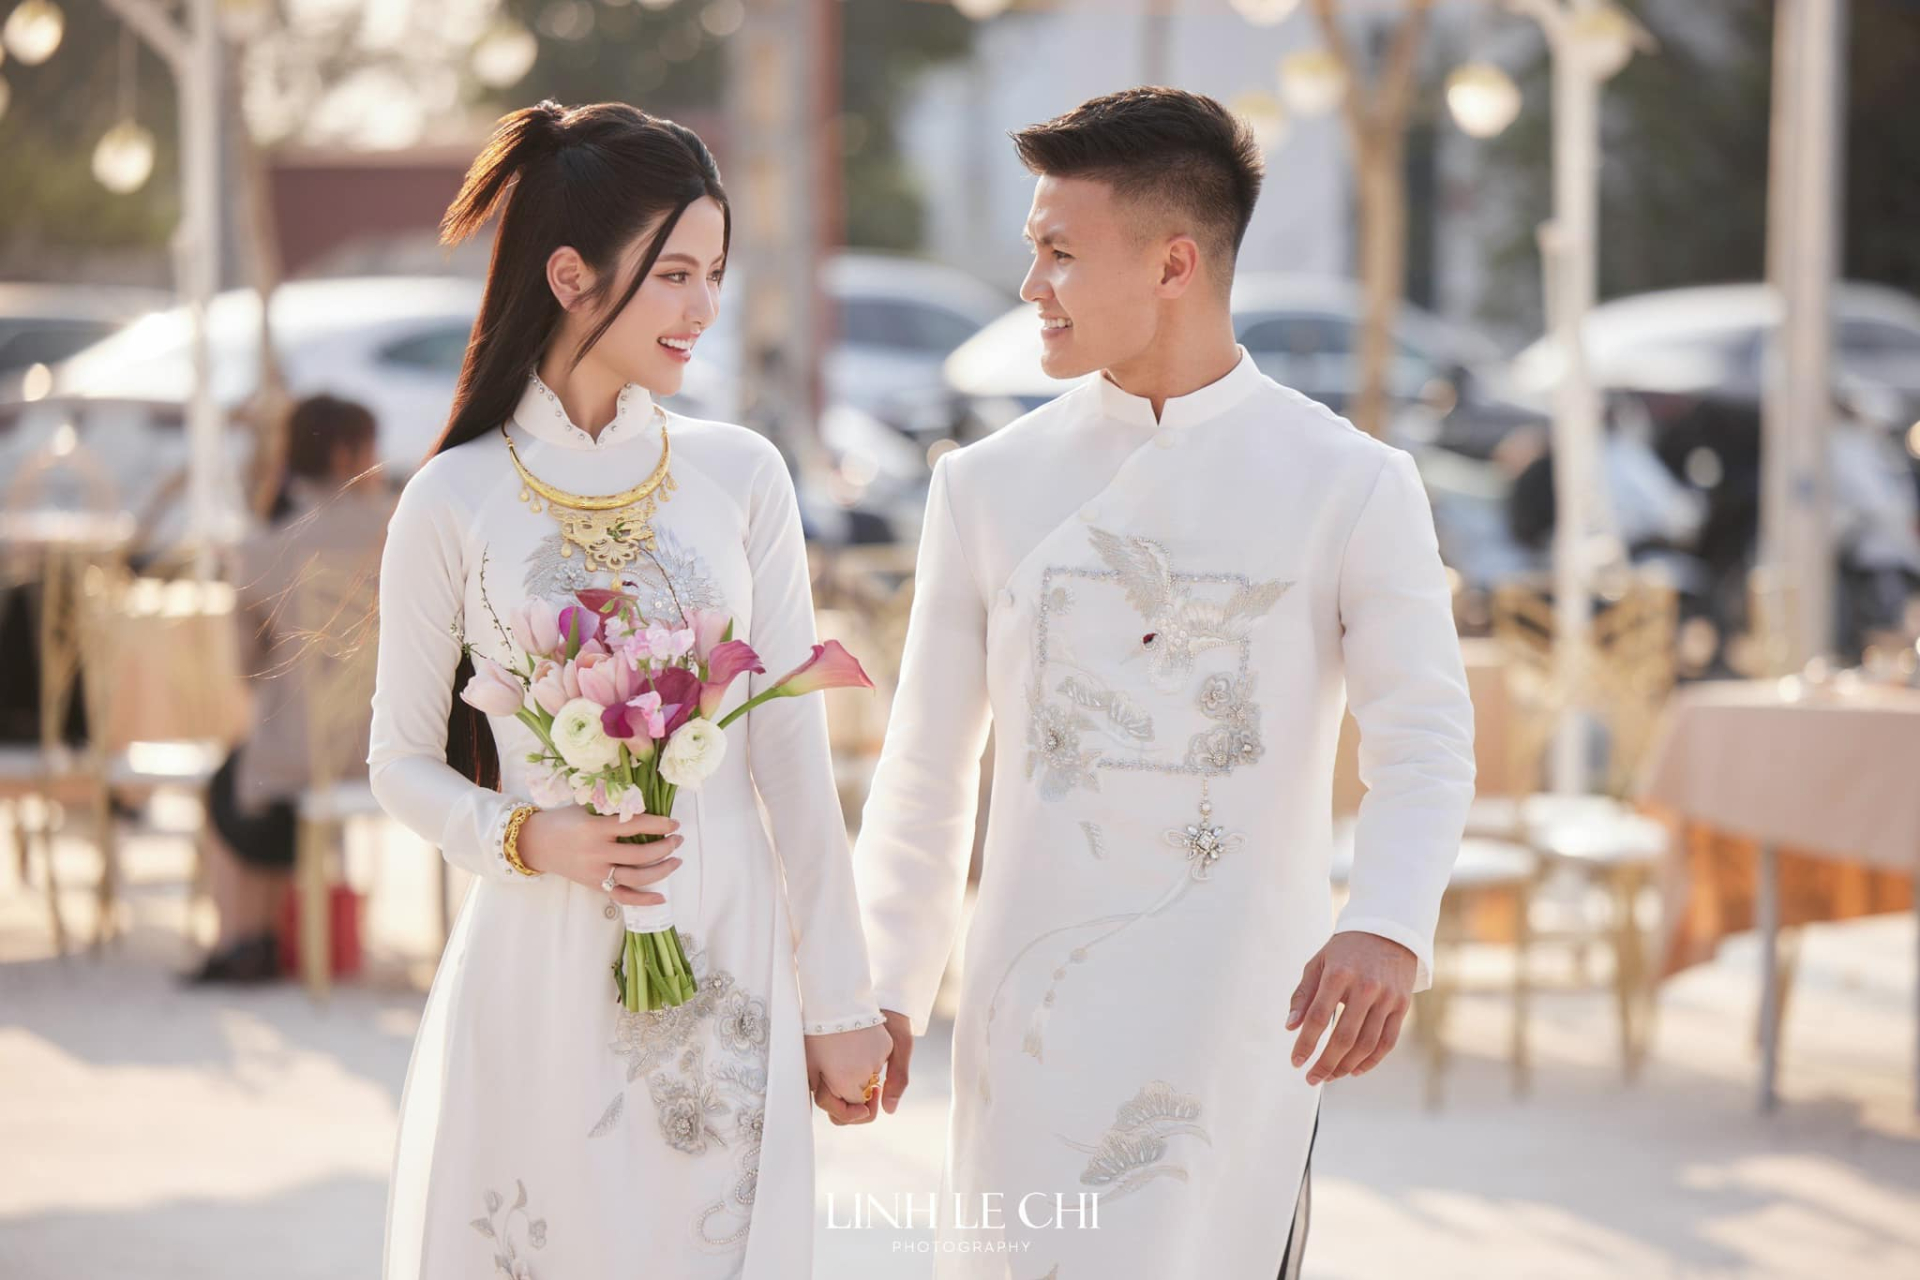 Quang Hải khoe đi đăng ký kết hôn với Chu Thanh Huyền, dàn cầu thủ vào “cảnh báo” chuyện lấy vợ cực hài hước - ảnh 2